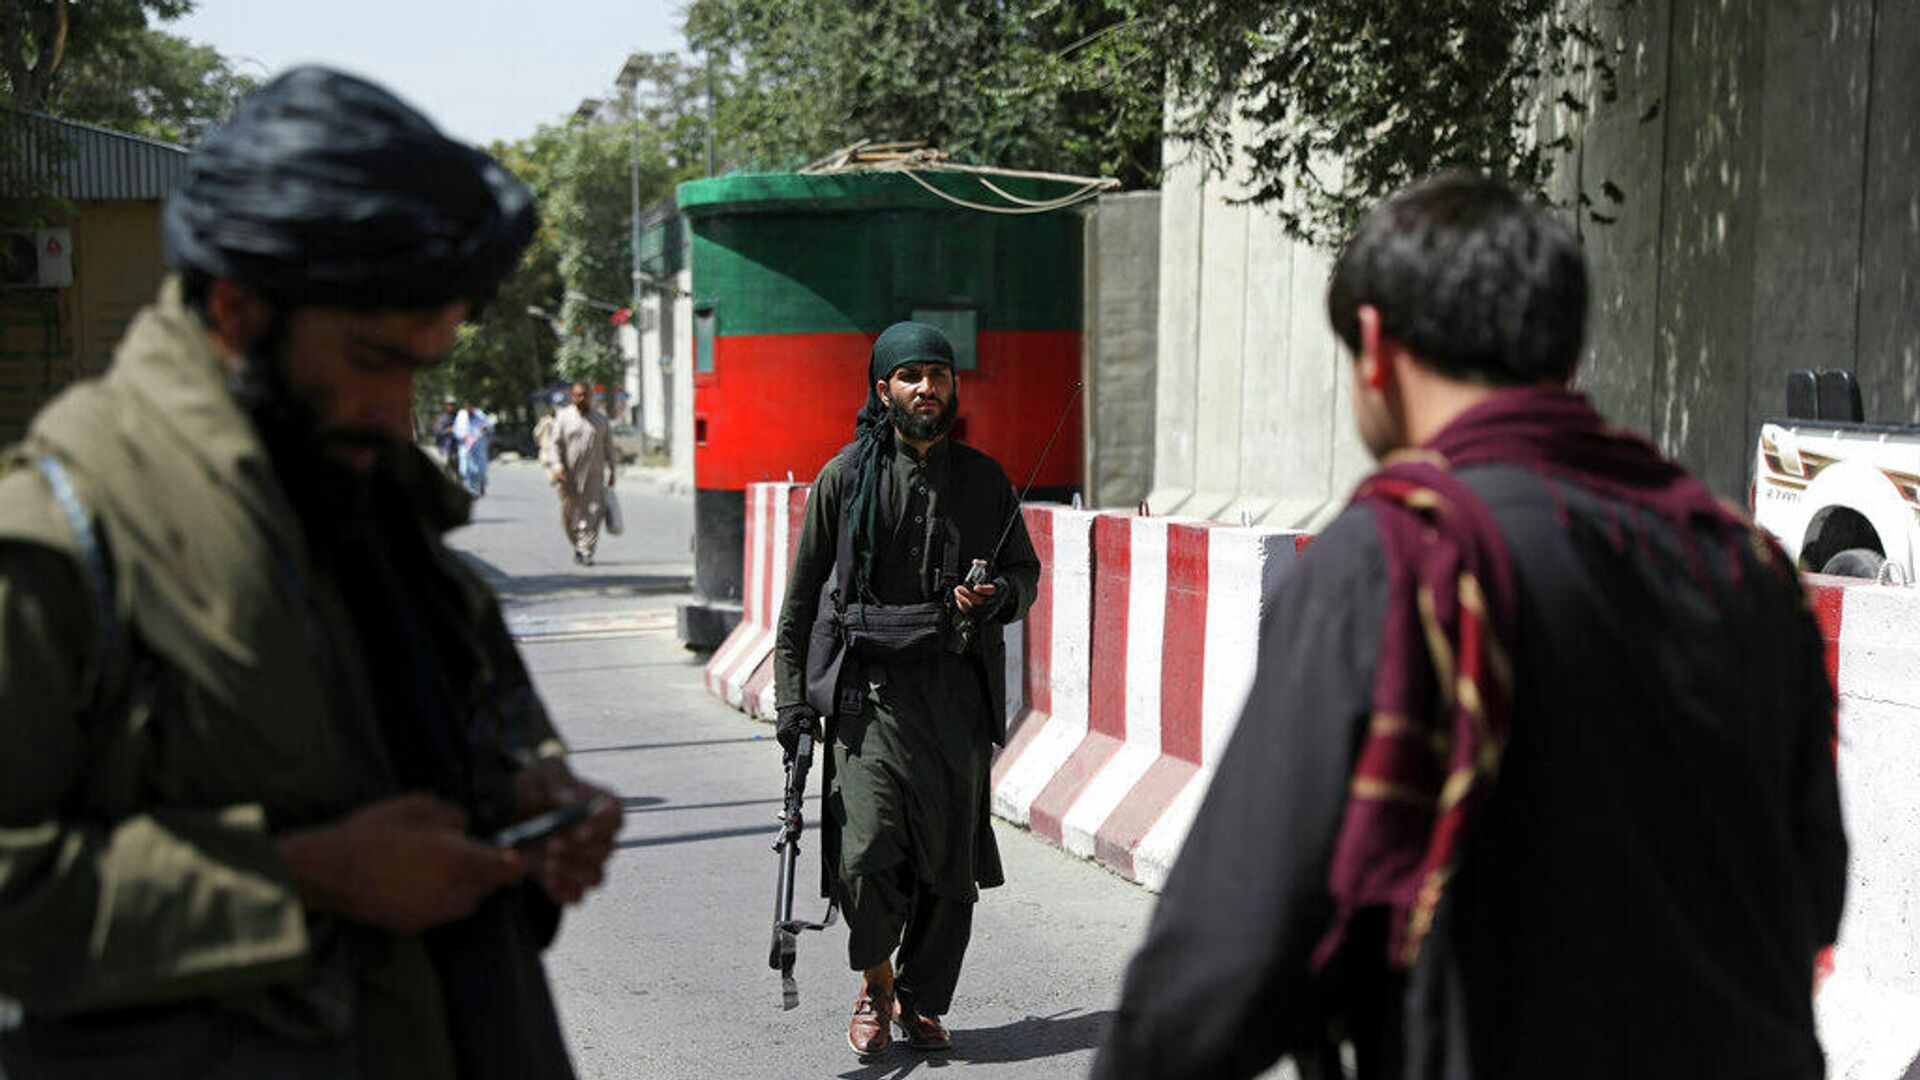 Бойцы Талибана  (признана в России запрещенной террористической организацией) охраняют блокпост на дороге к Министерству иностранных дел Афганистана в Кабуле. 16 августа 2021 г. - РИА Новости, 1920, 16.08.2021